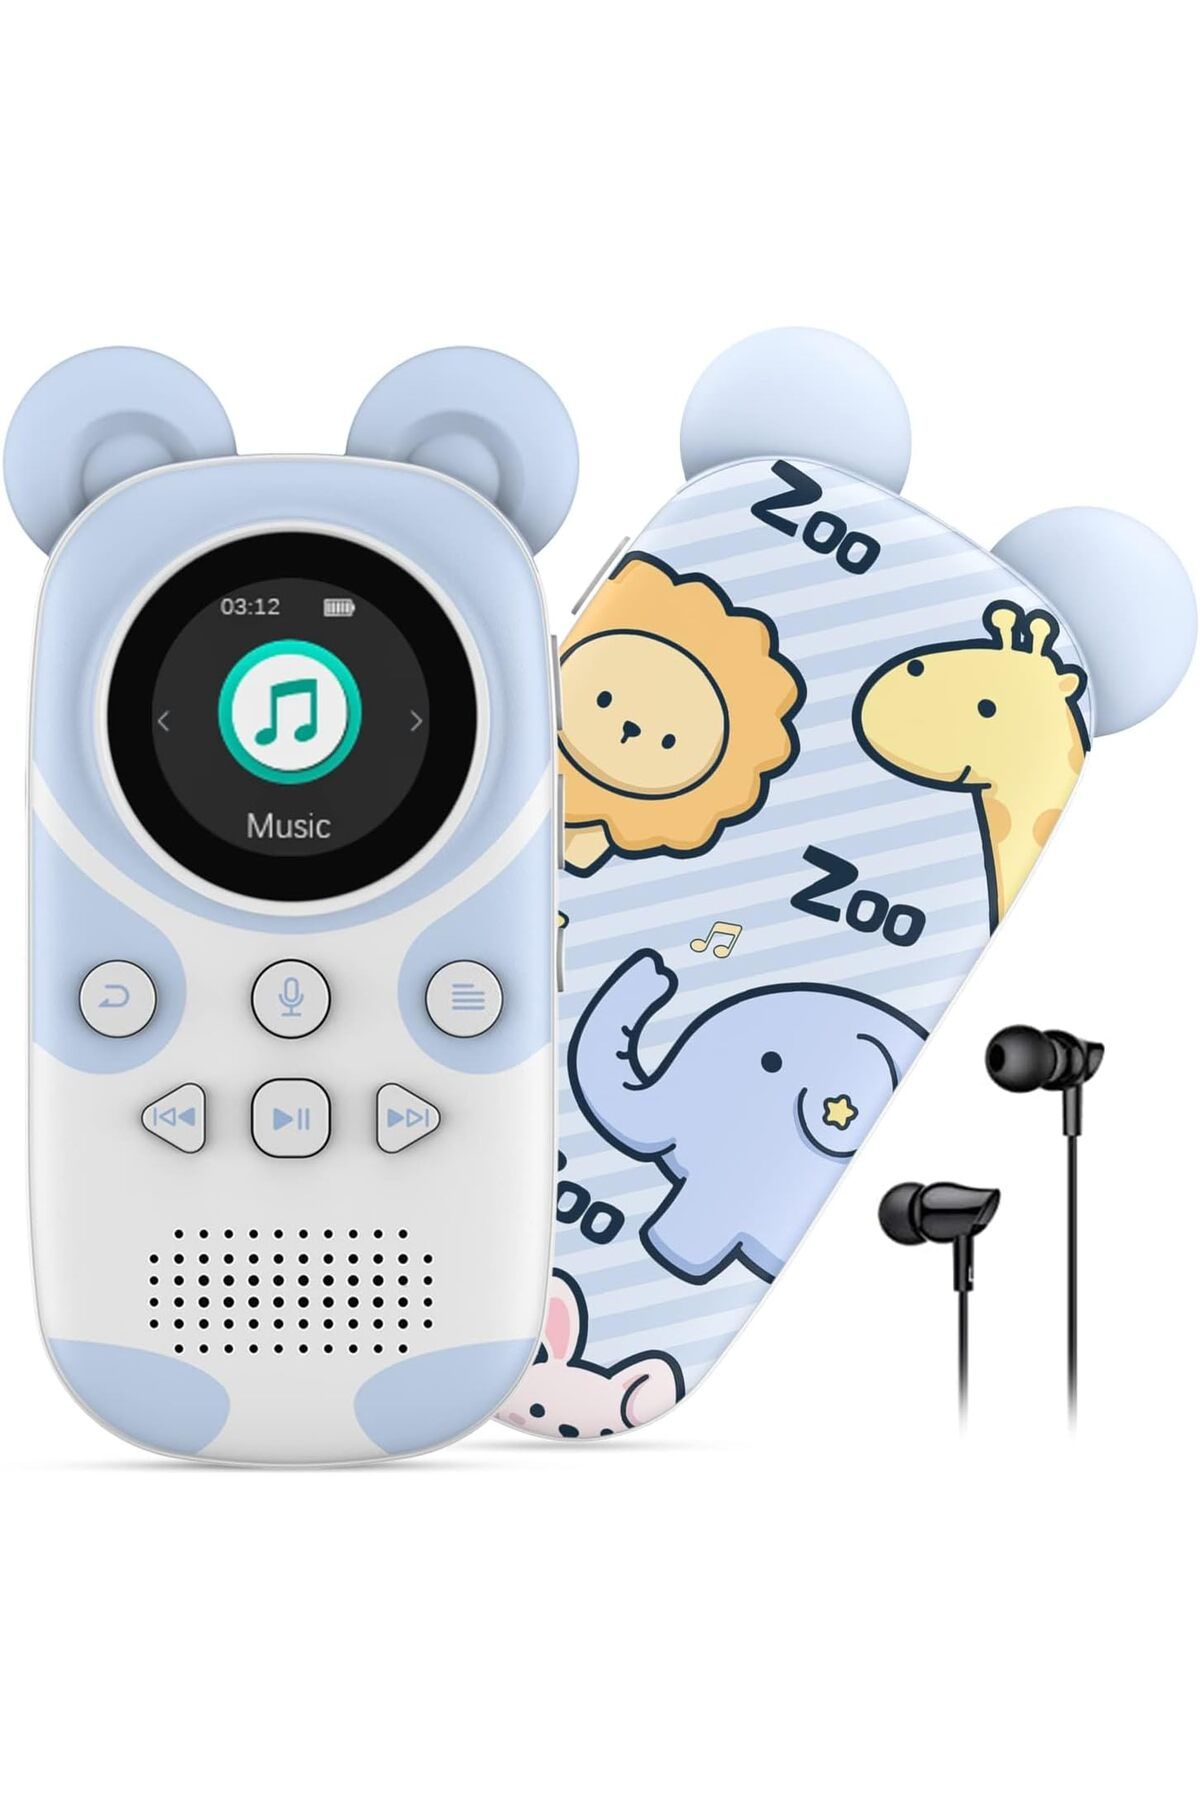 Ruizu Çocuklar İçin 16 GB Bluetooth 5.0 MP3 Çalar Kulaklıklı Hoparlör, FM Radyo, Alarm, Tek Tuşla Kayıt